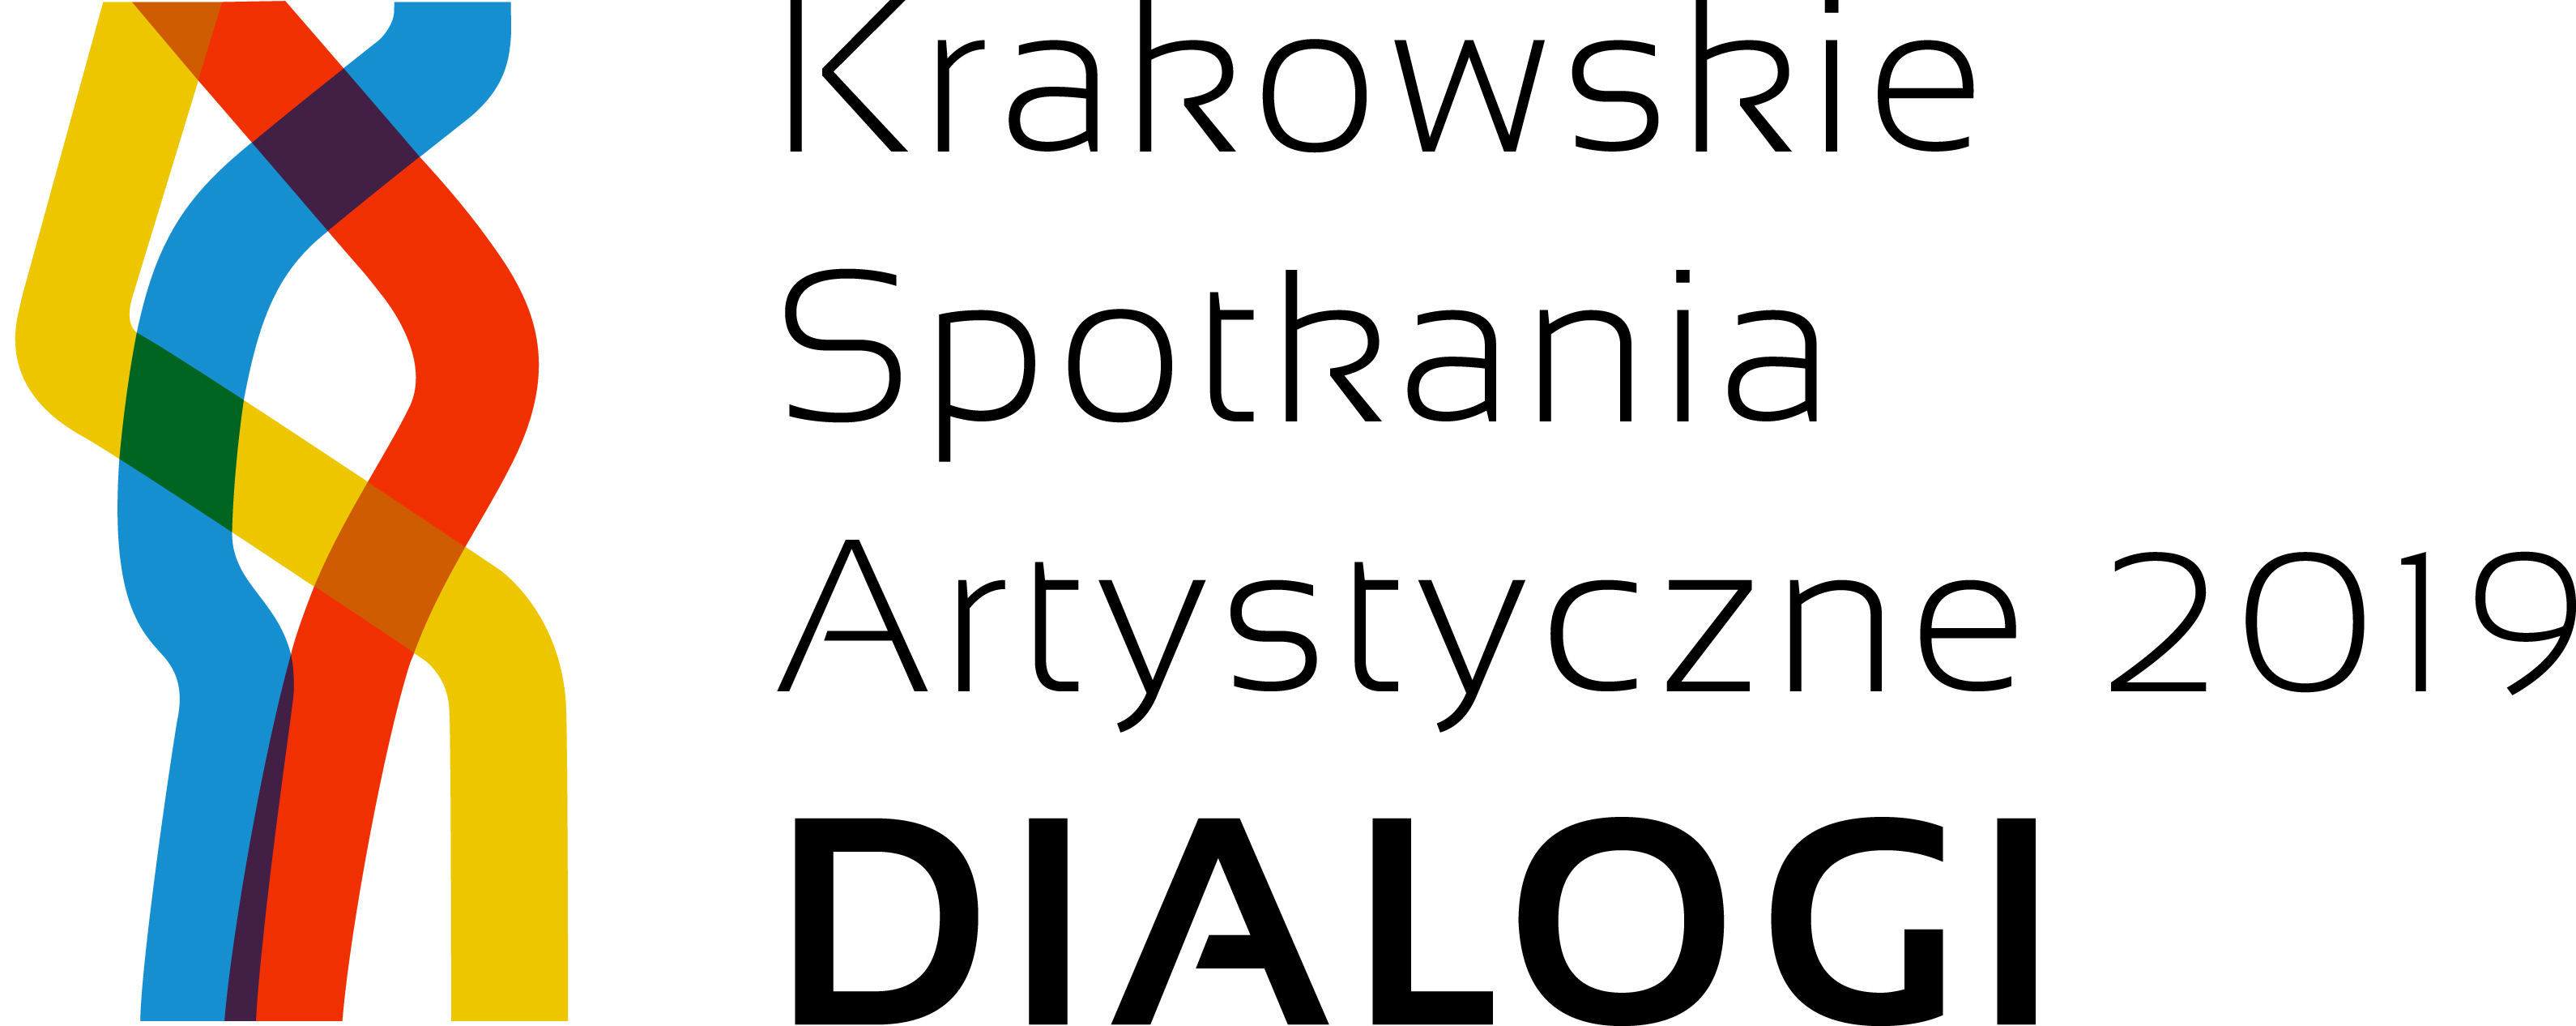 Krakowskie Spotkania Artystyczne 2019